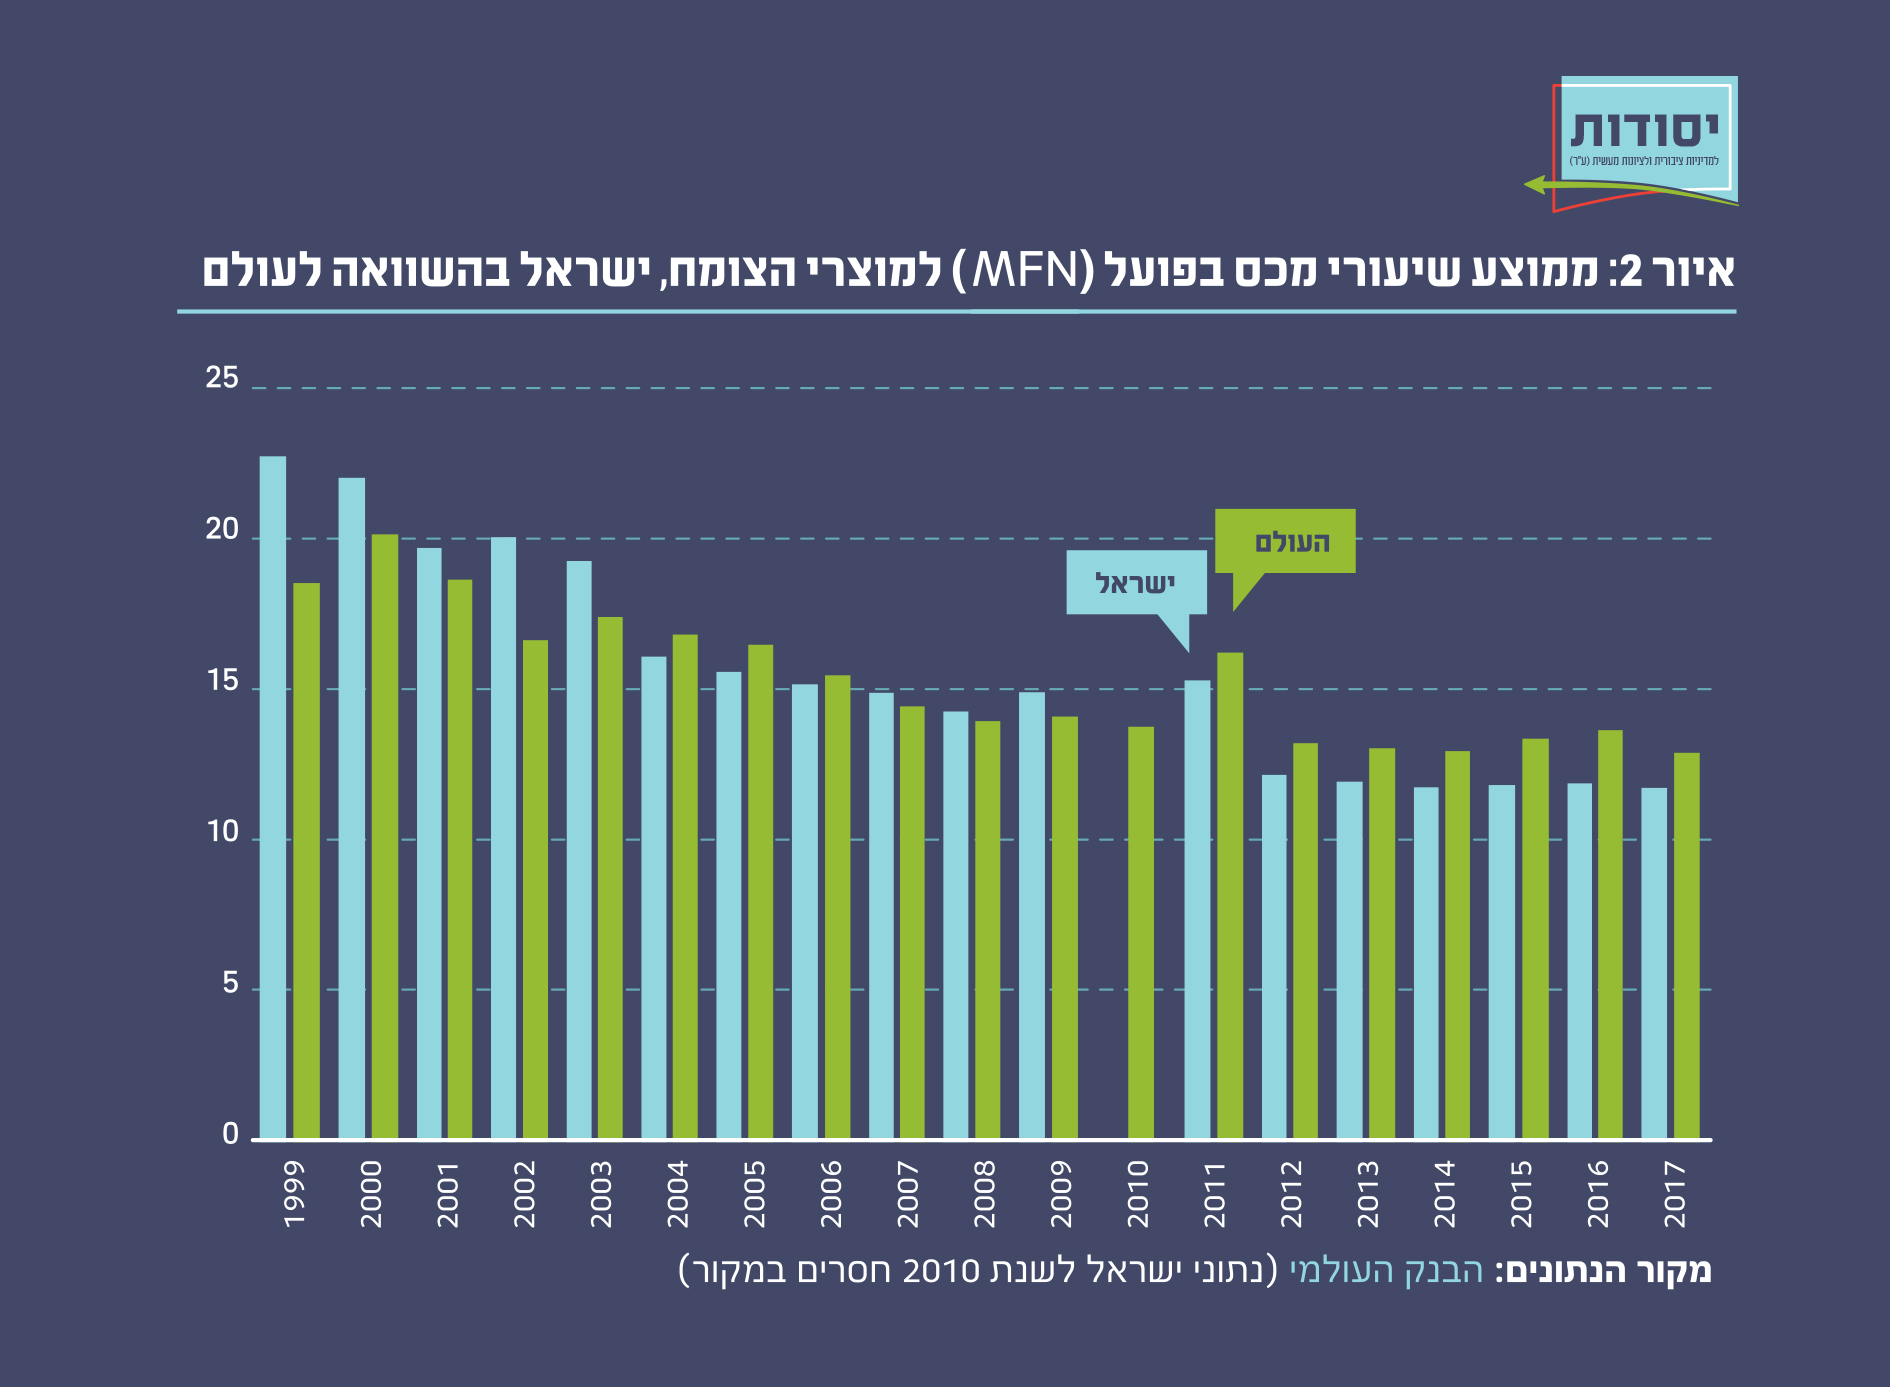 איור 2: ממוצע שיעורי מכס בפועל (MFN) למוצרי הצומח, ישראל בהשוואה לעולם